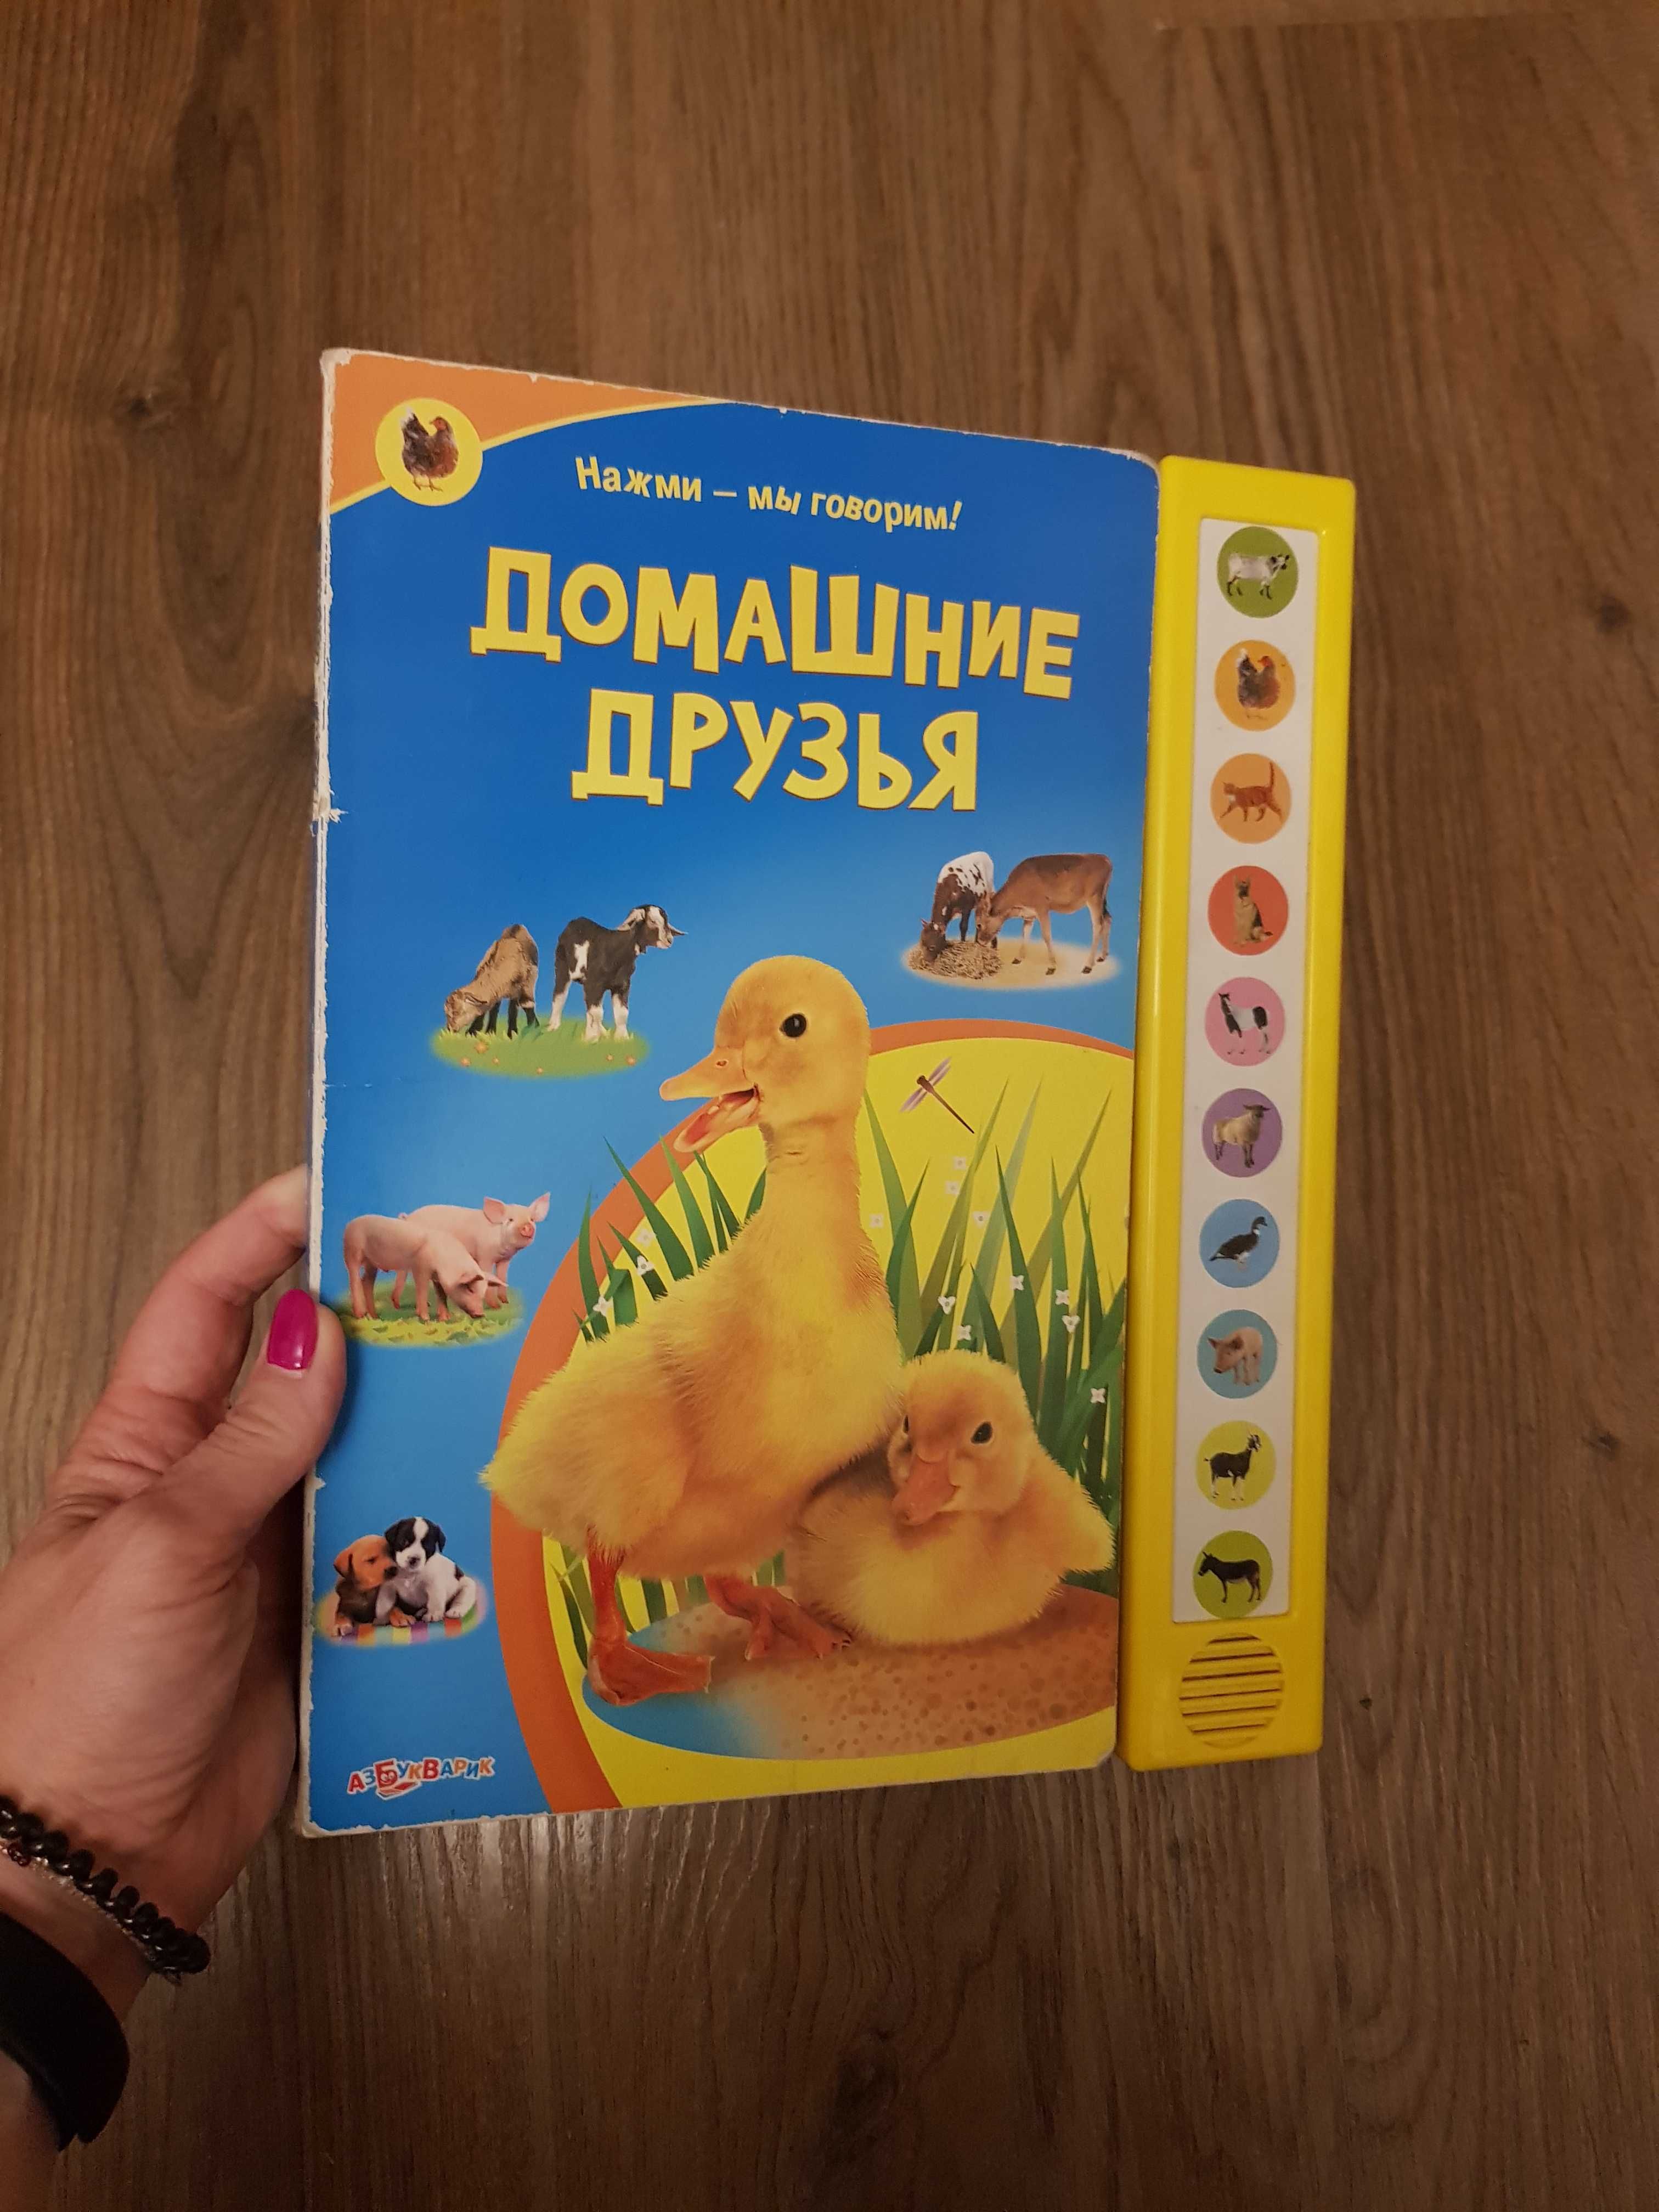 Дитячі книги Сказки Шарля Перро